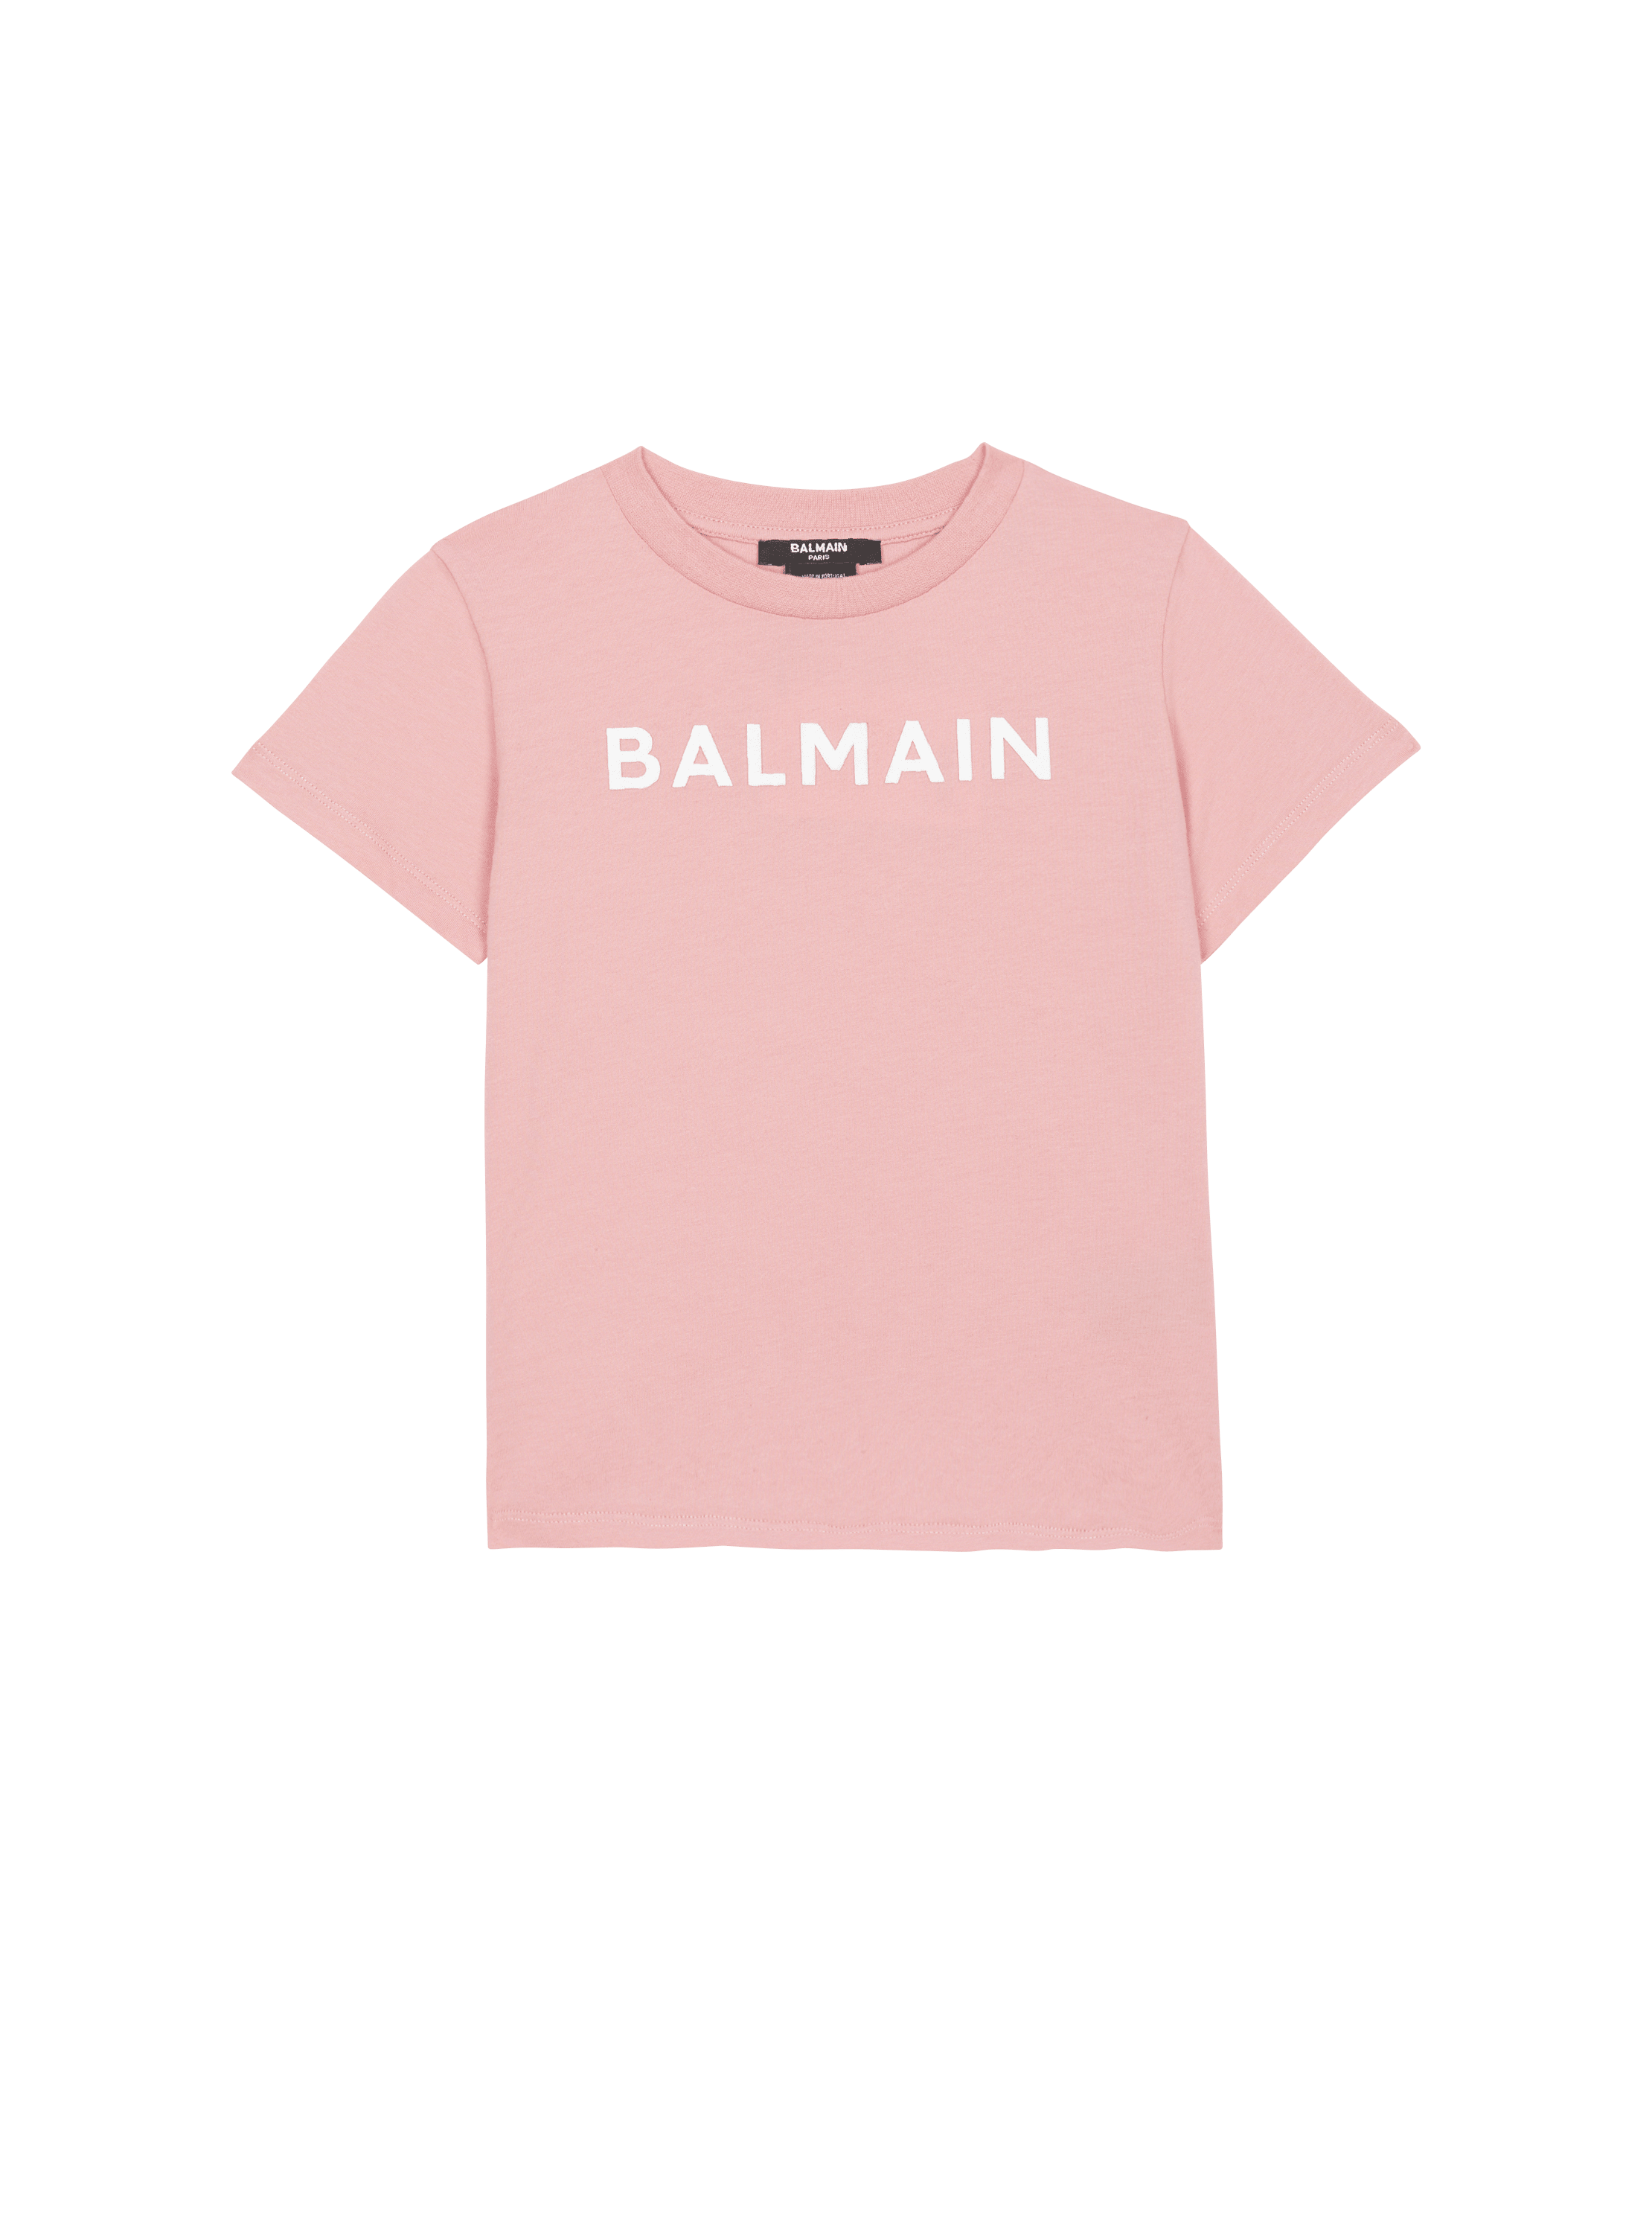 T-shirt with Balmain logo